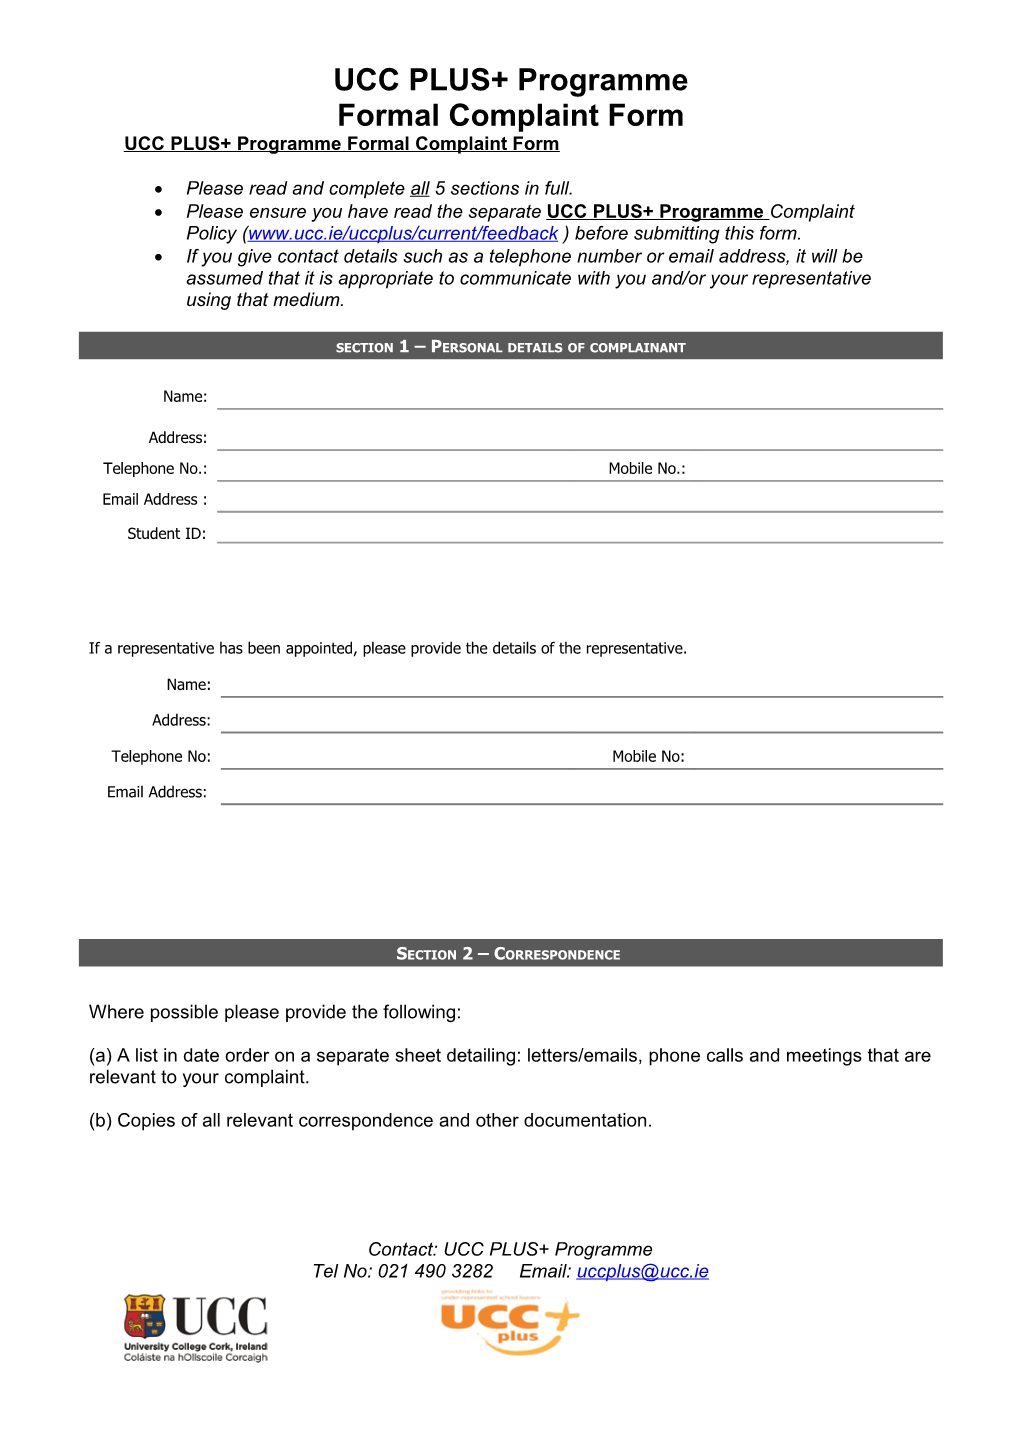 UCC PLUS+ Programmeformal Complaint Form